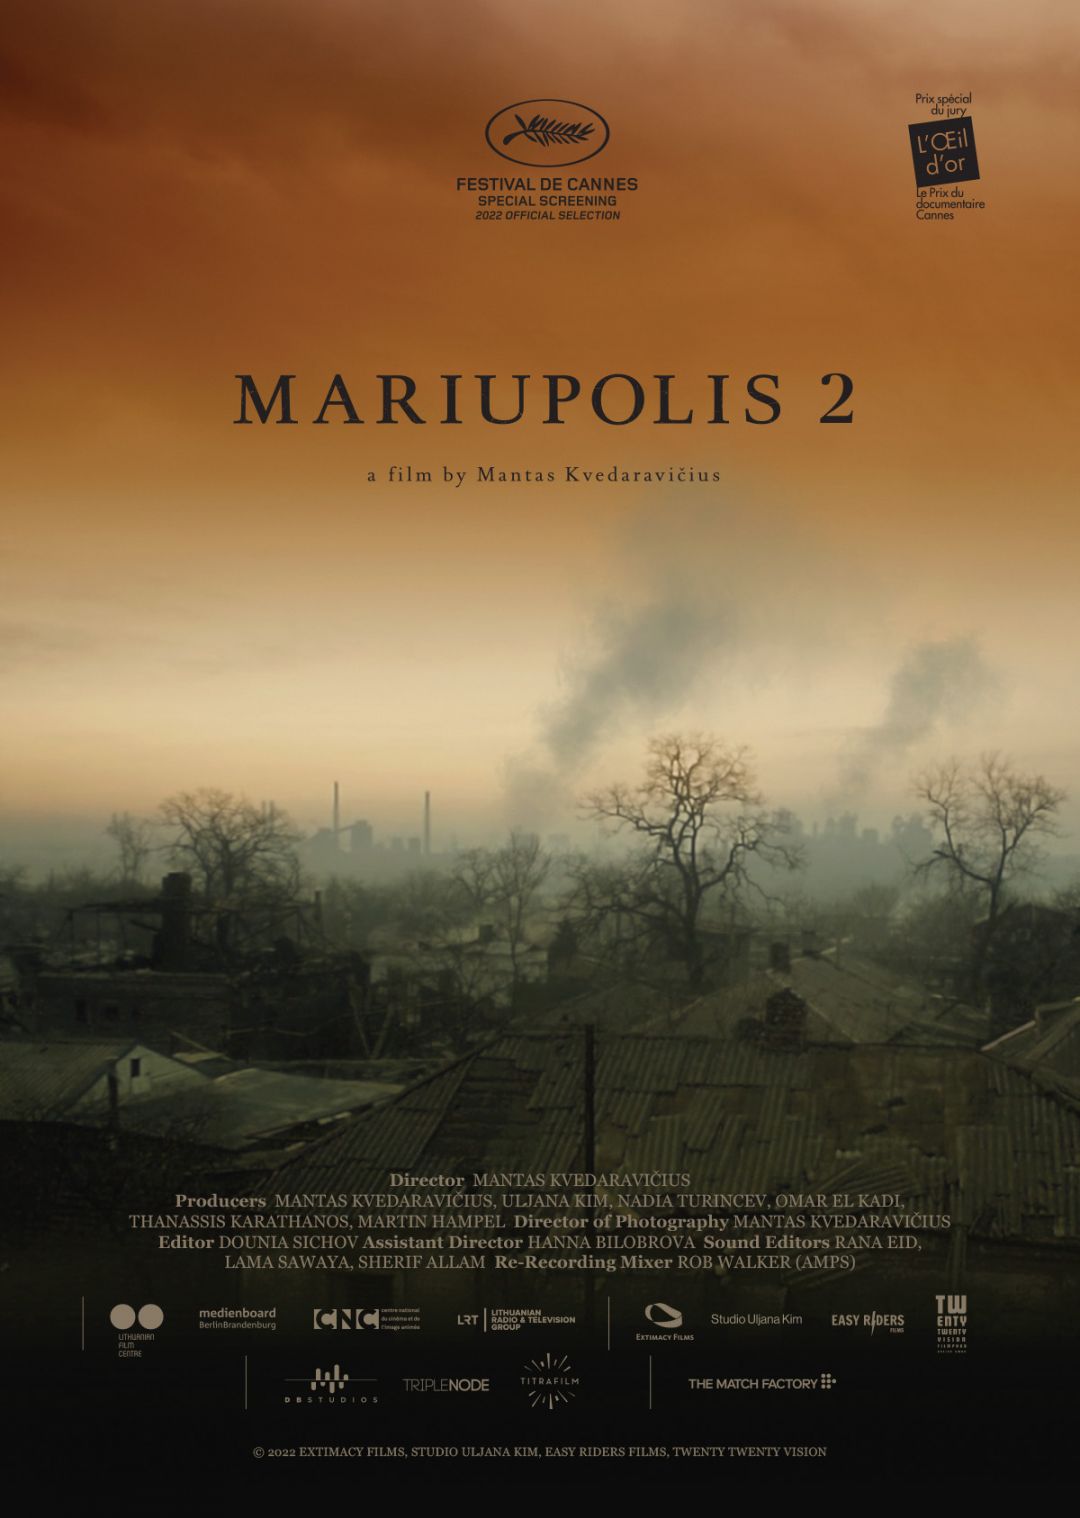 FFC Film Mariupolis 2 gewinnt beim Europäischen Filmpreis